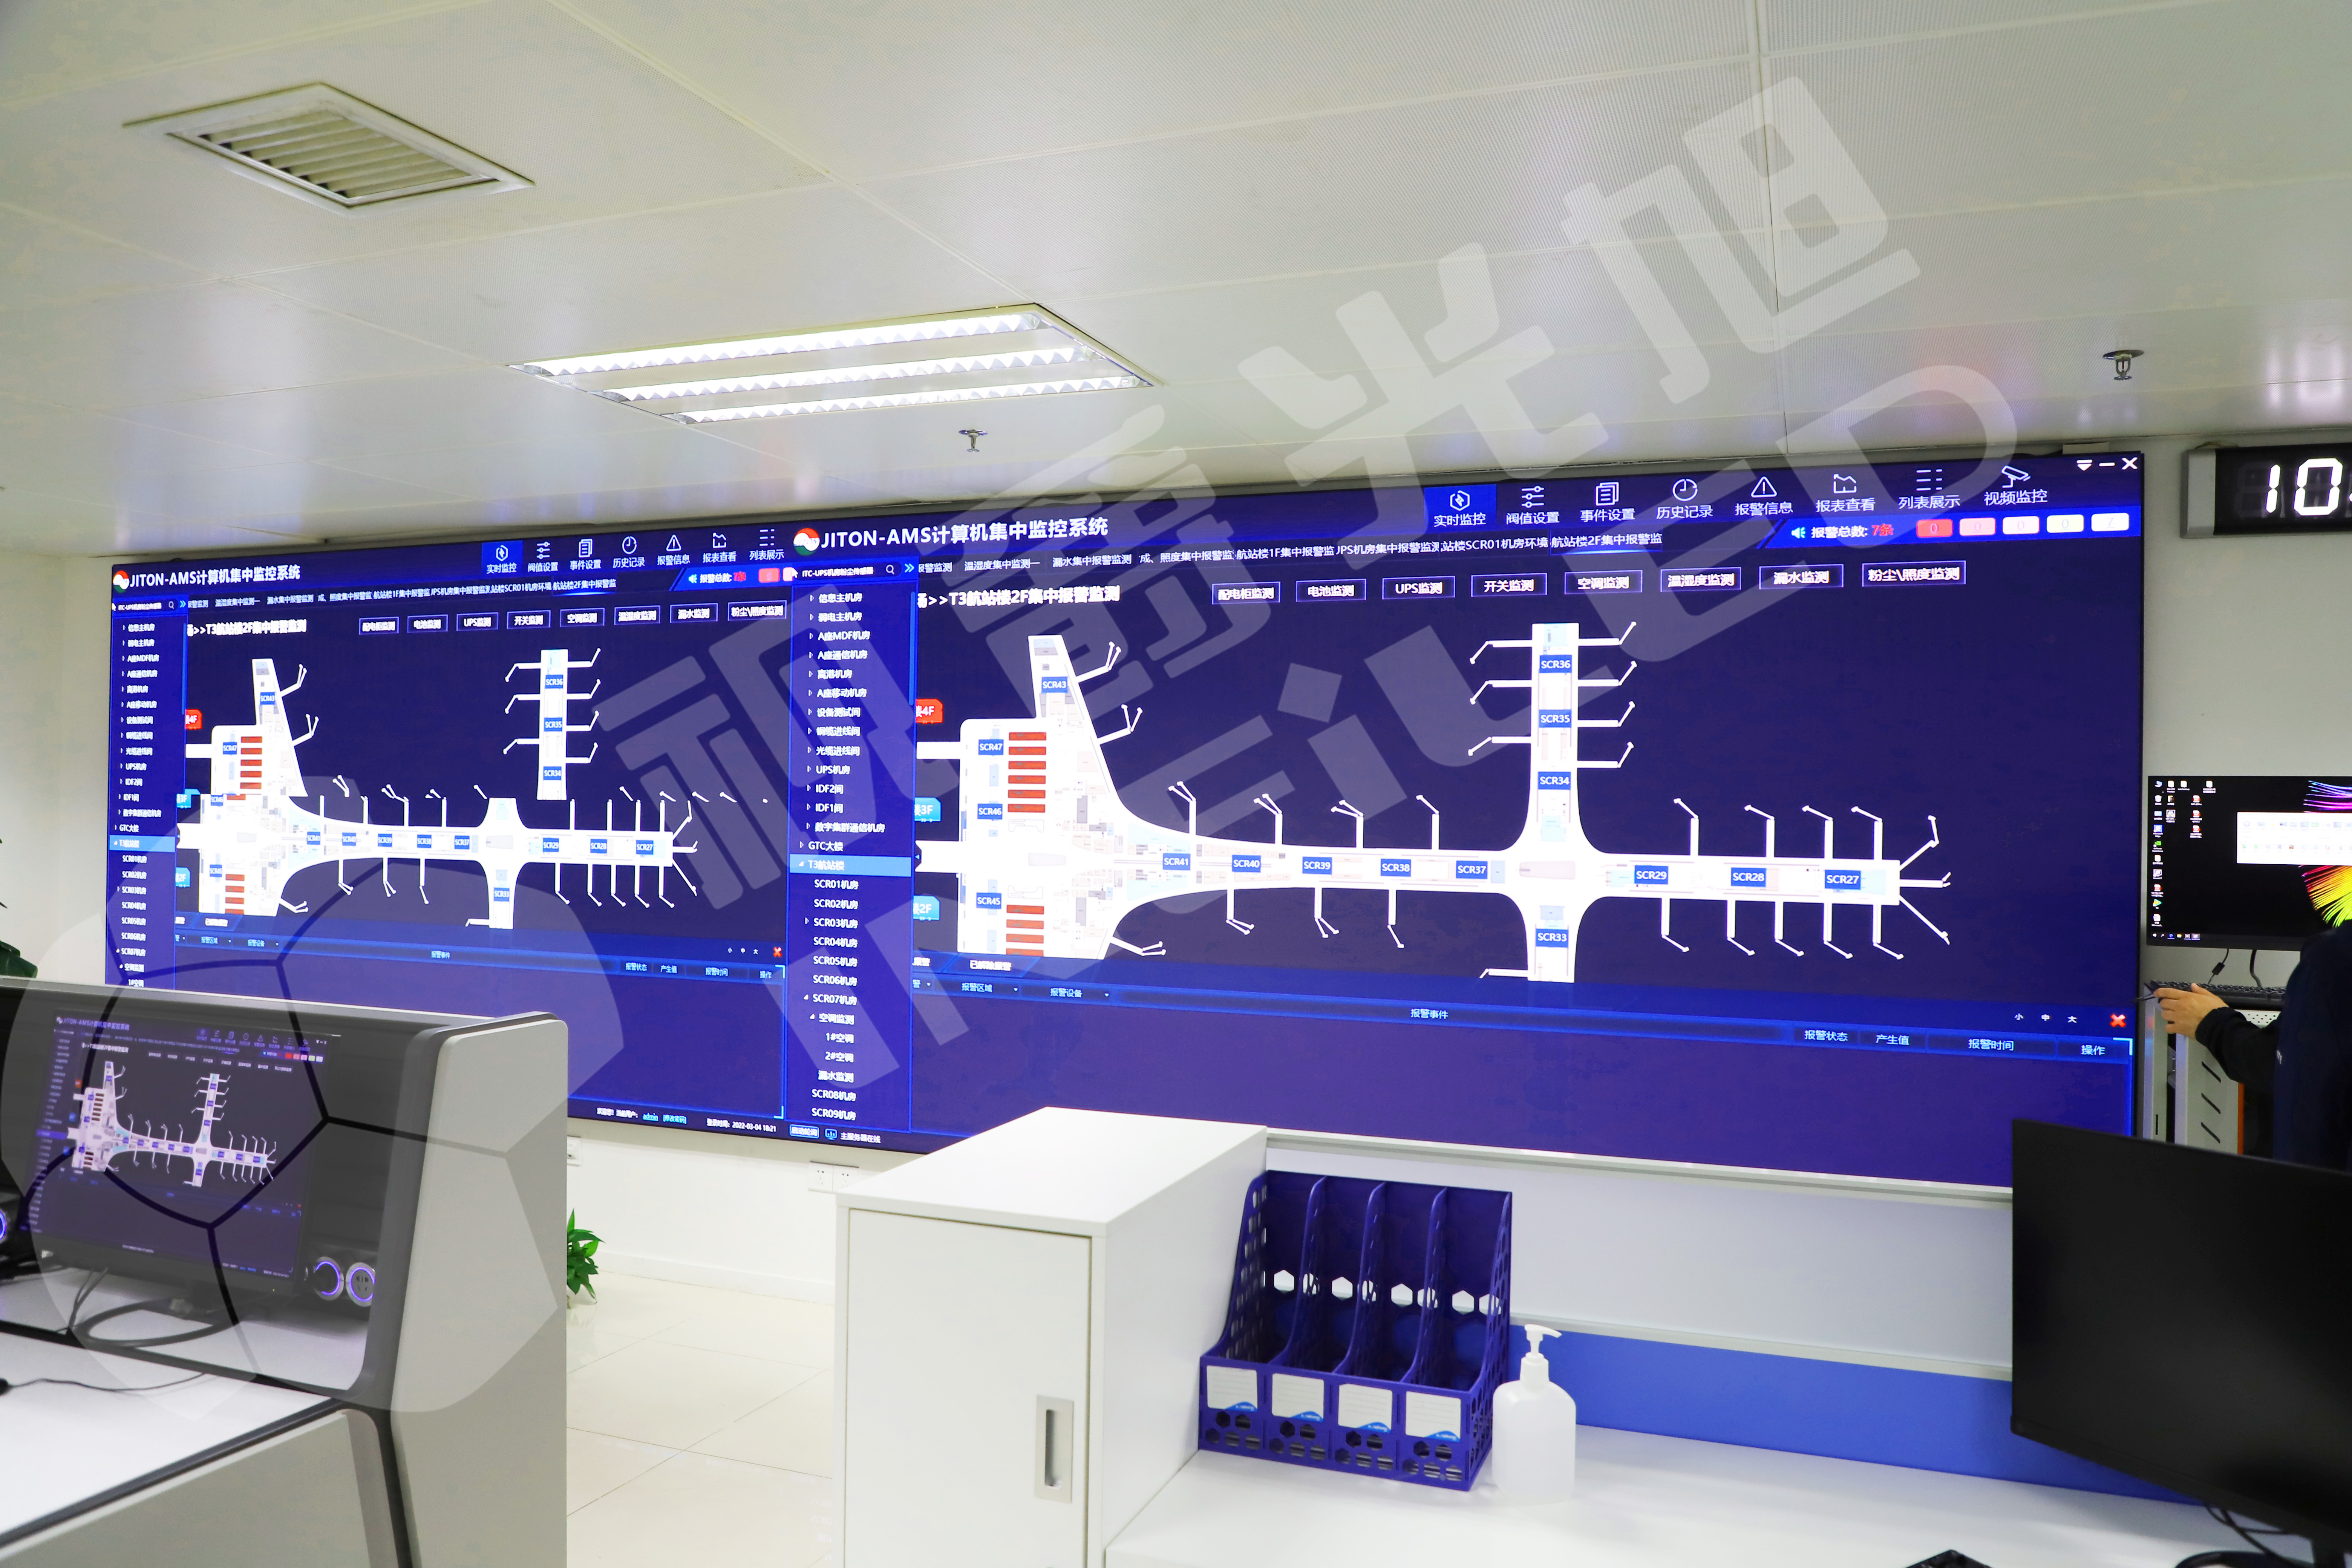 深圳宝安国际机场运维室就采用视爵光旭旗下点间距为1.25的轻薄壁挂LED显示屏